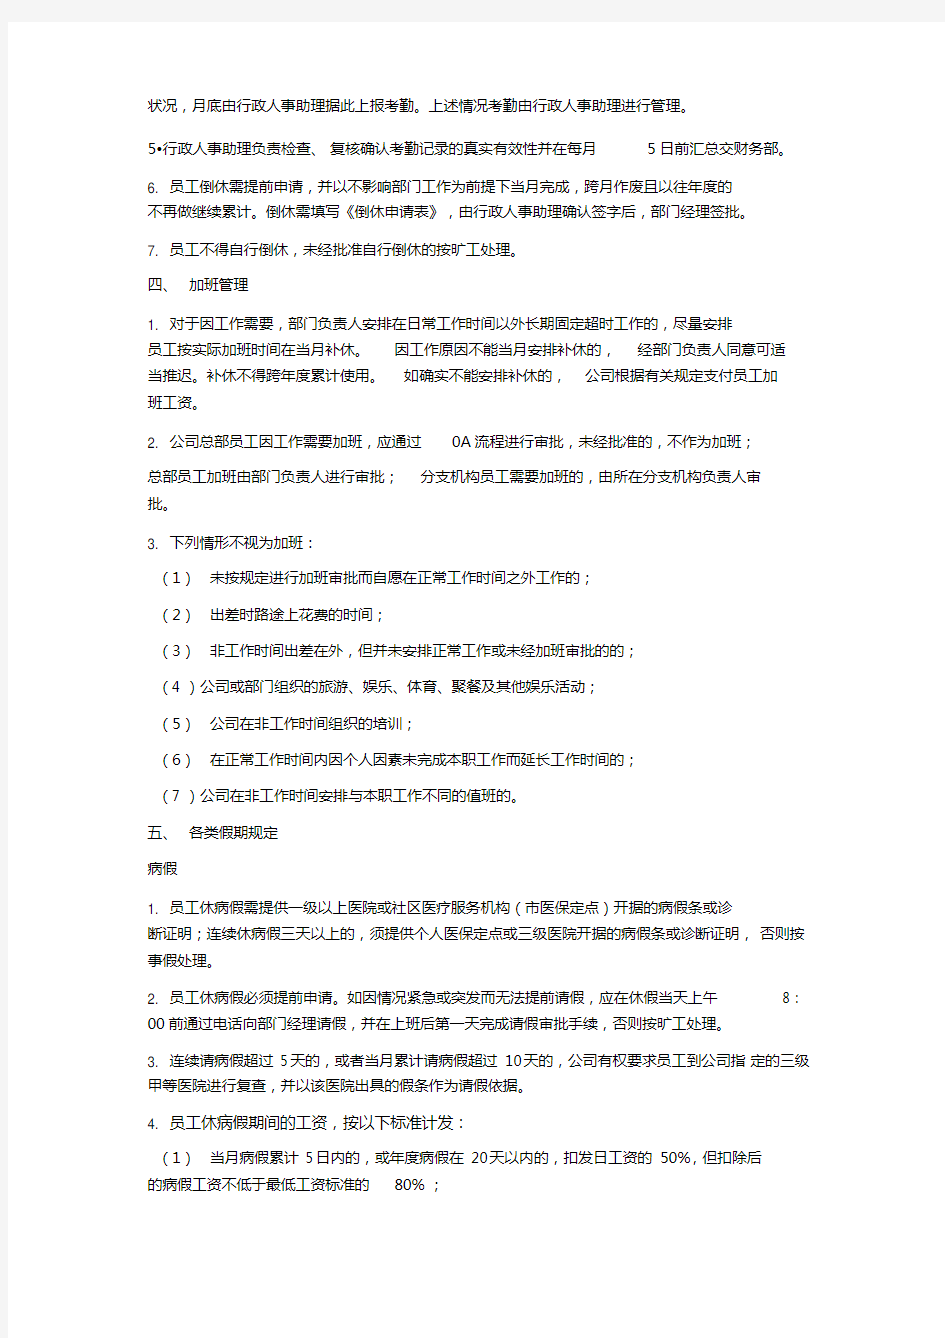 公司考勤管理制度(通用版-北京2016版)